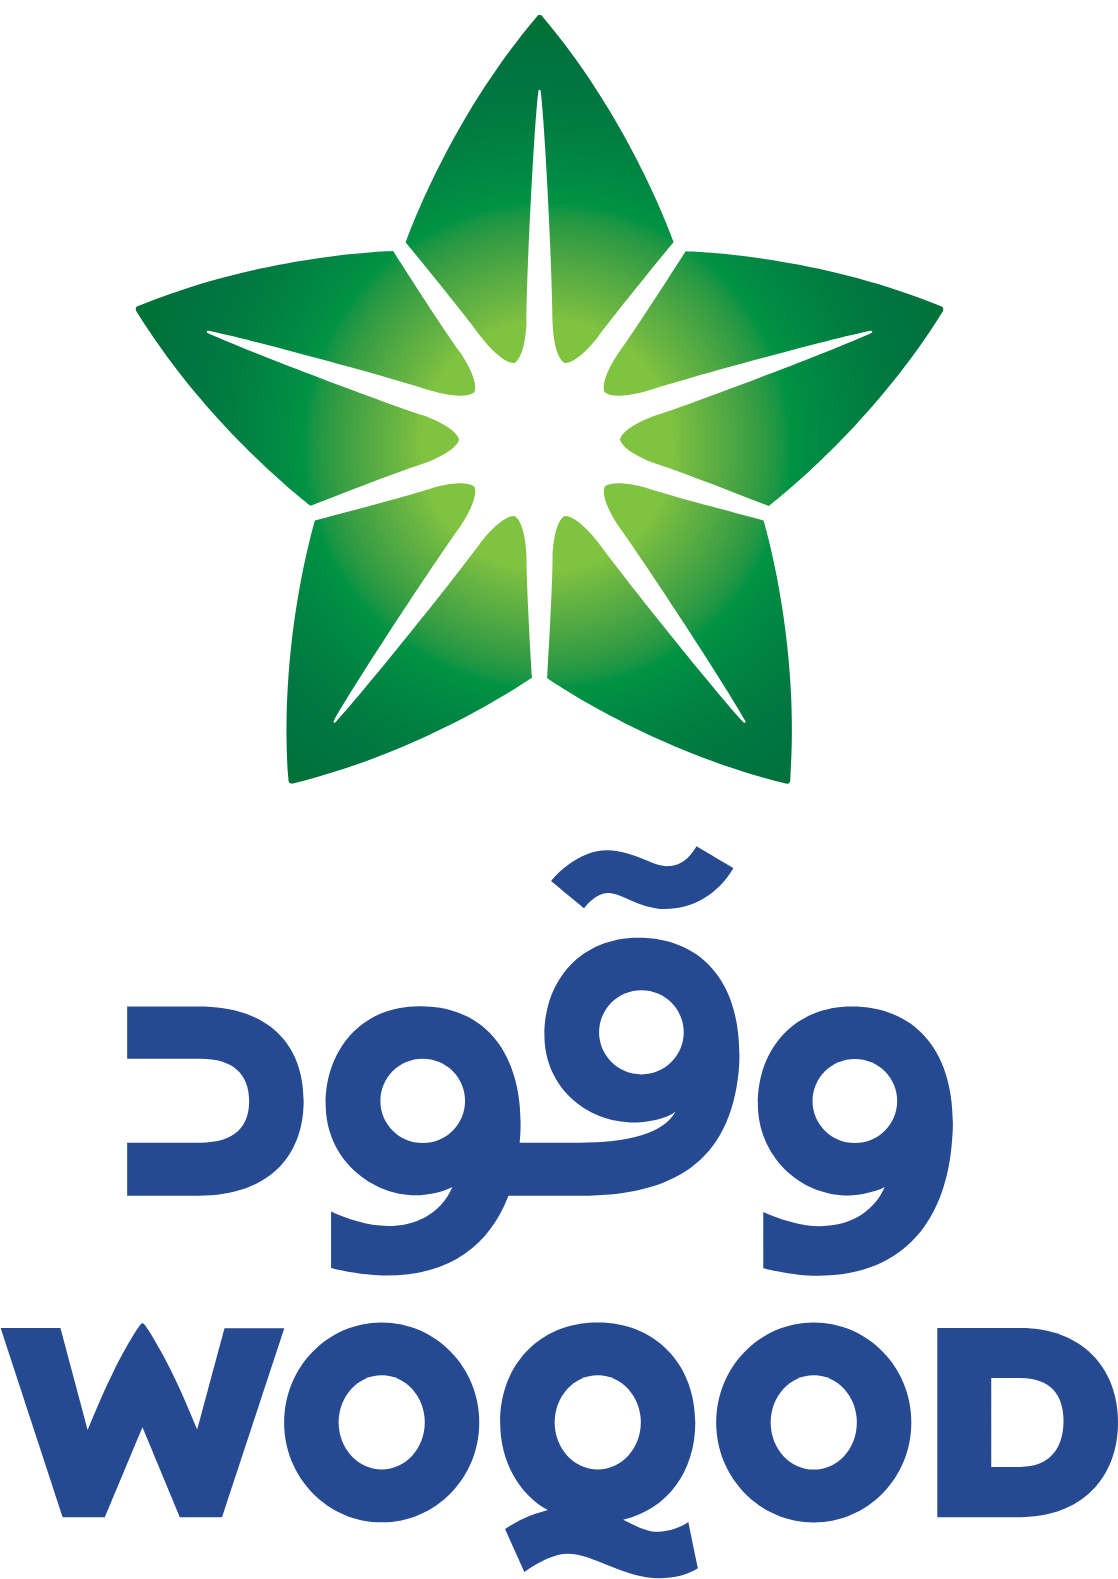 Qatar Fuel Company (WOQOD) logo large (transparent PNG)